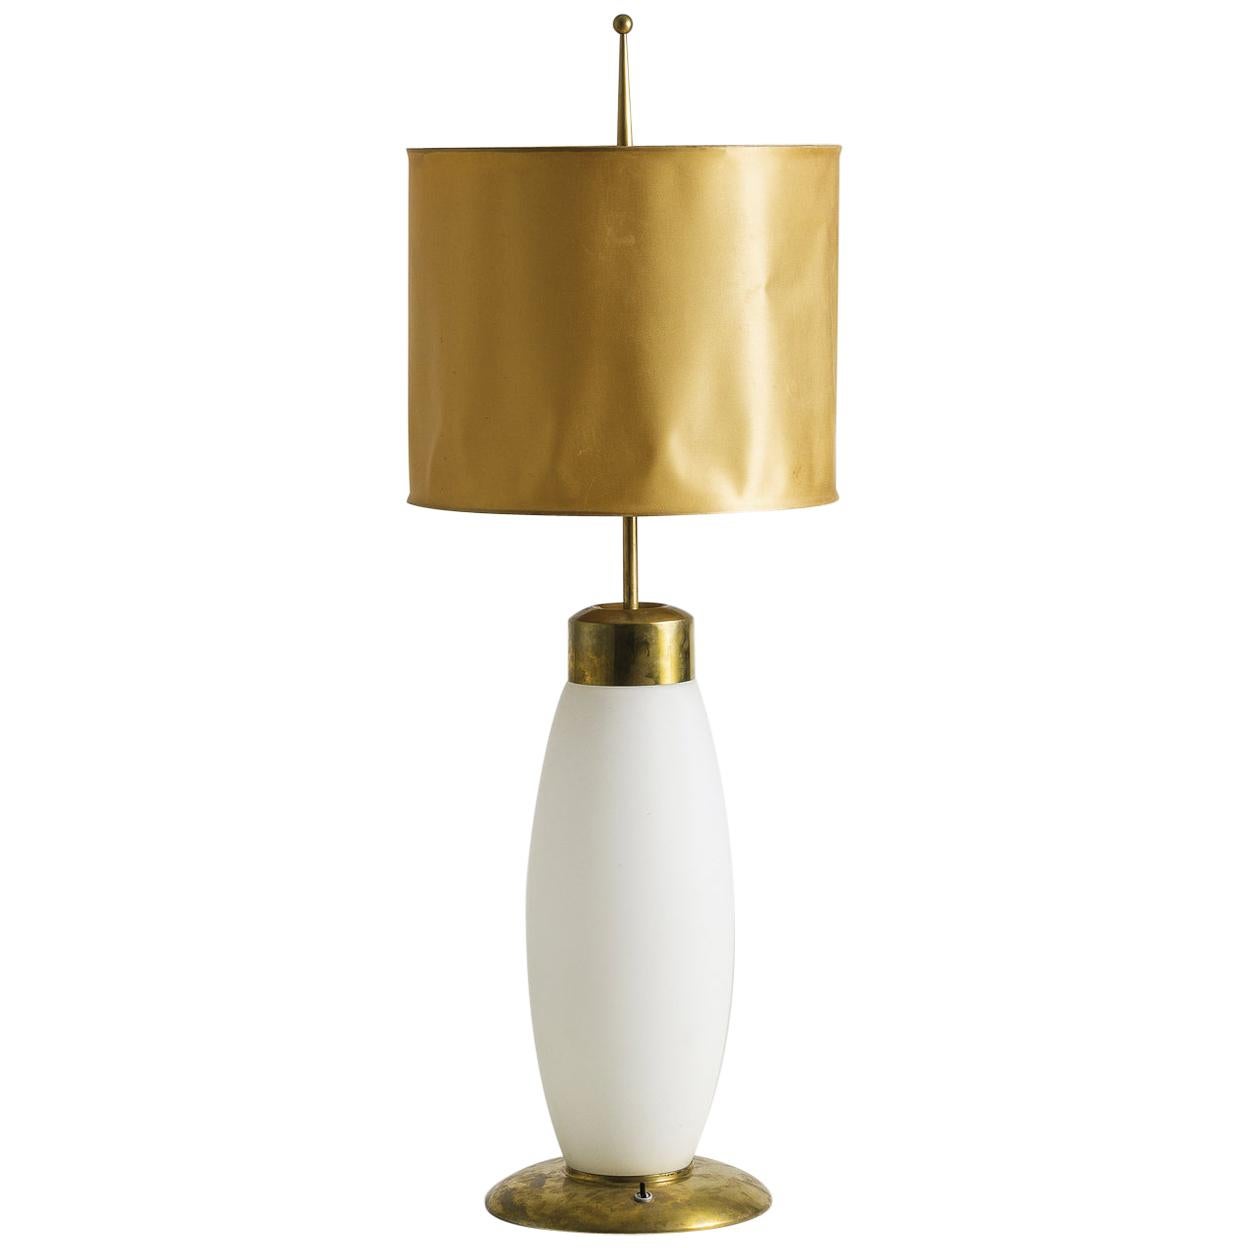 Italian Stilnovo Table Lamp, 1950s For Sale